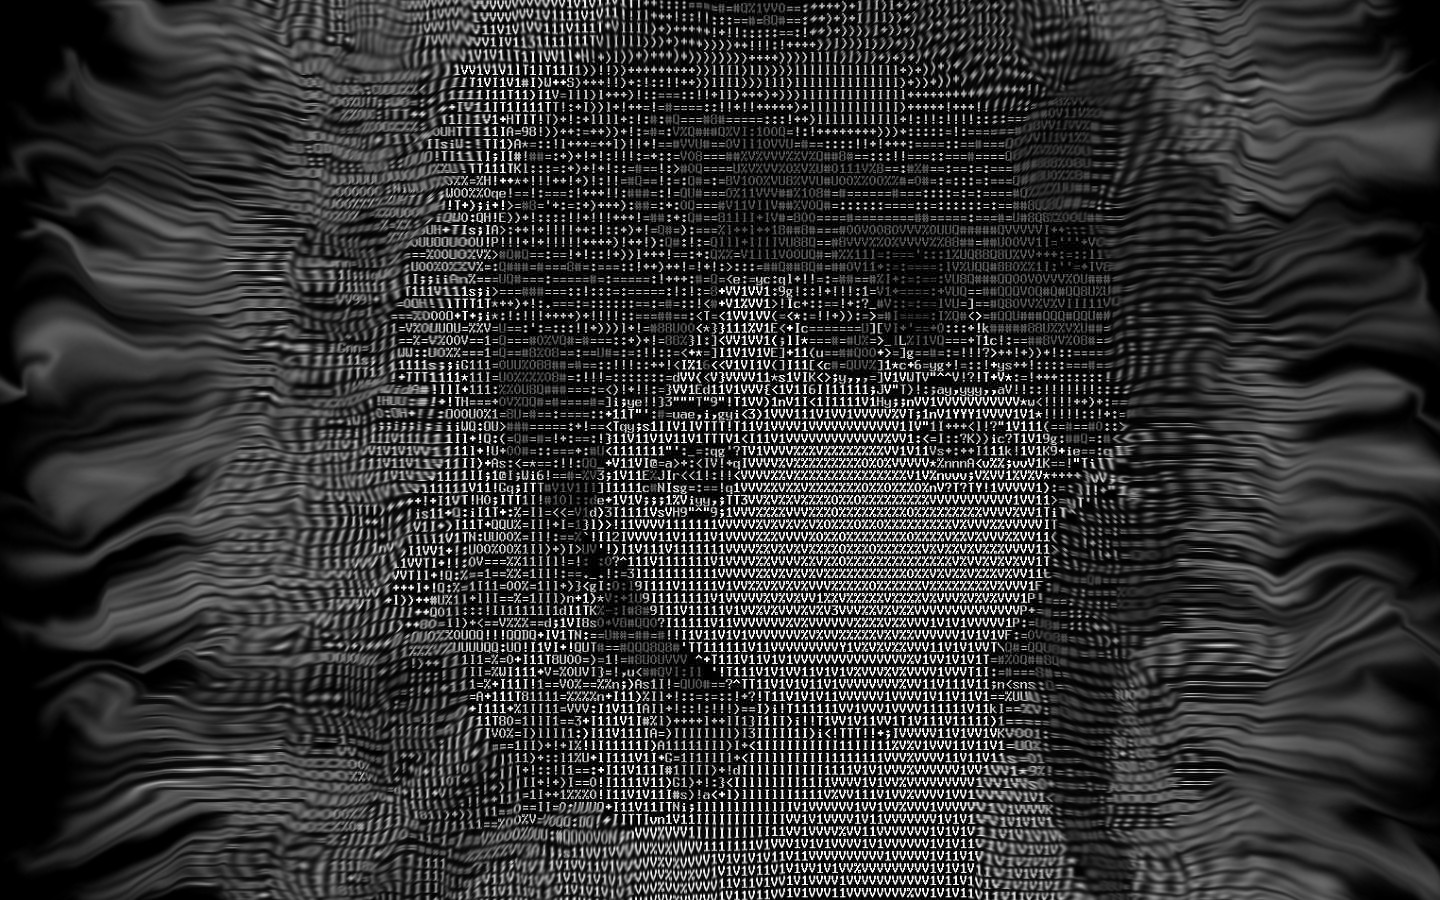 Serial Experiments Lain, Lain Iwakura, Cyberpunk Wallpaper